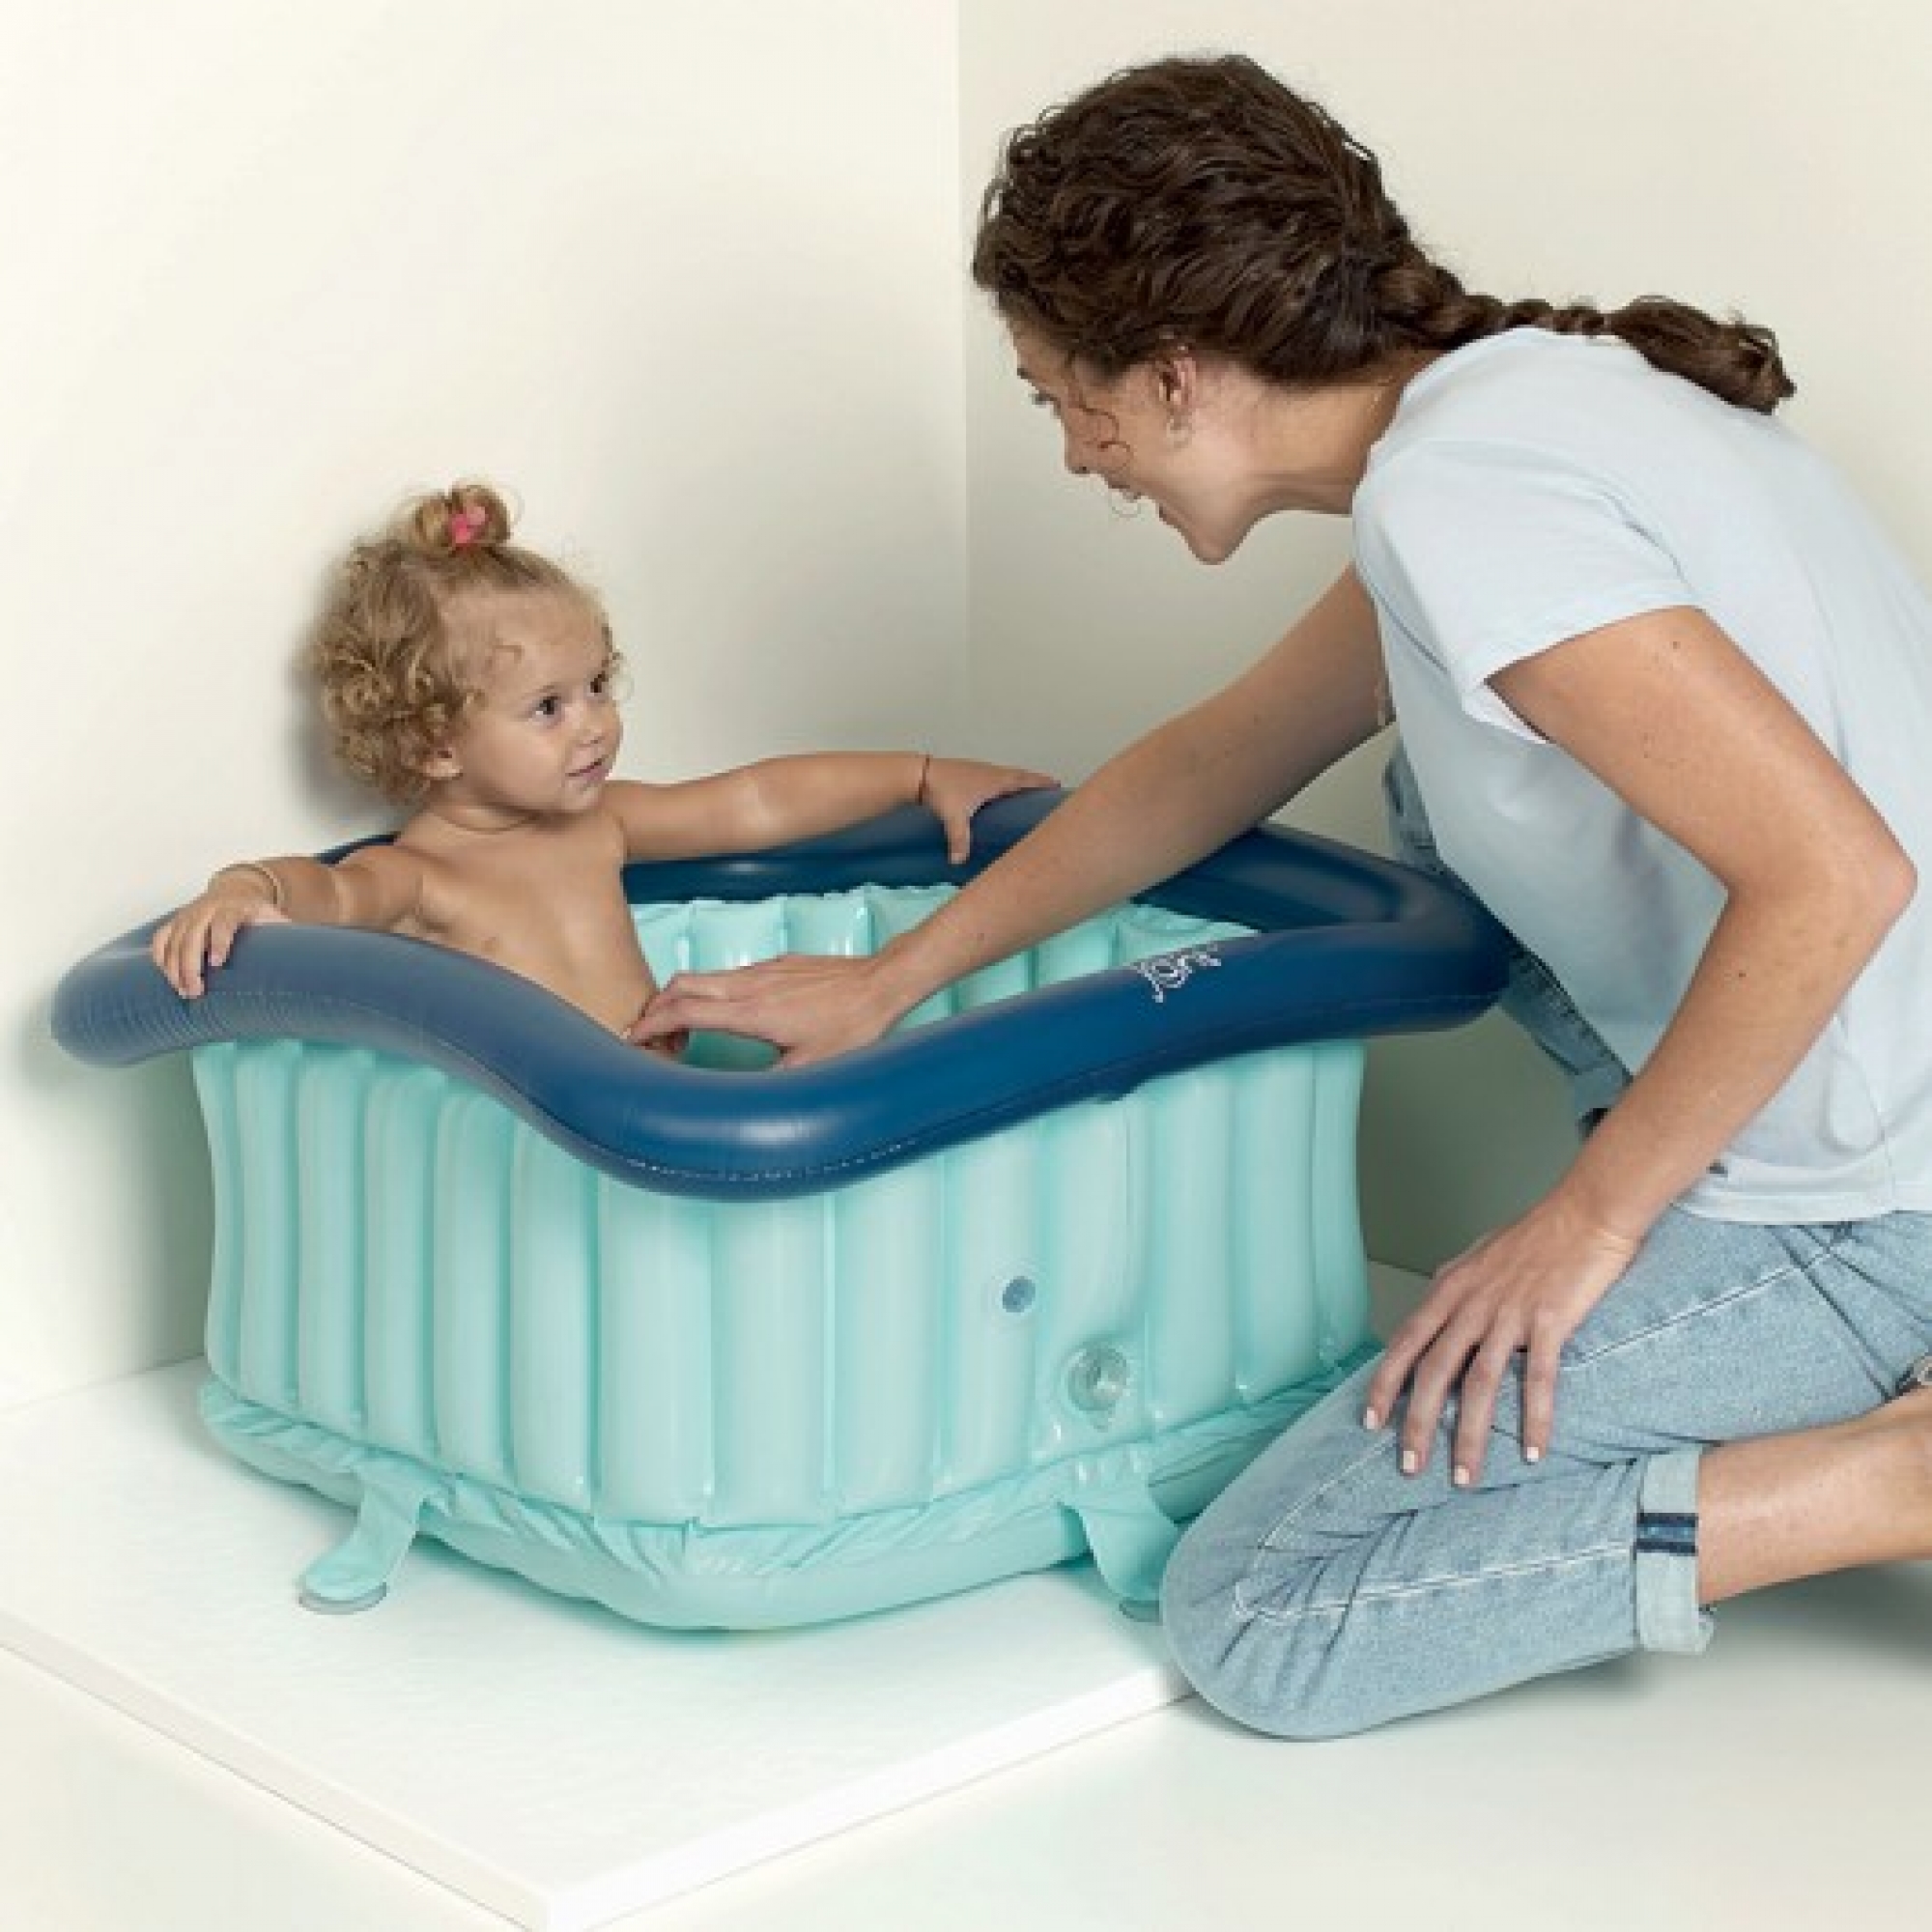 Bouchon baignoire bébé universel au meilleur prix